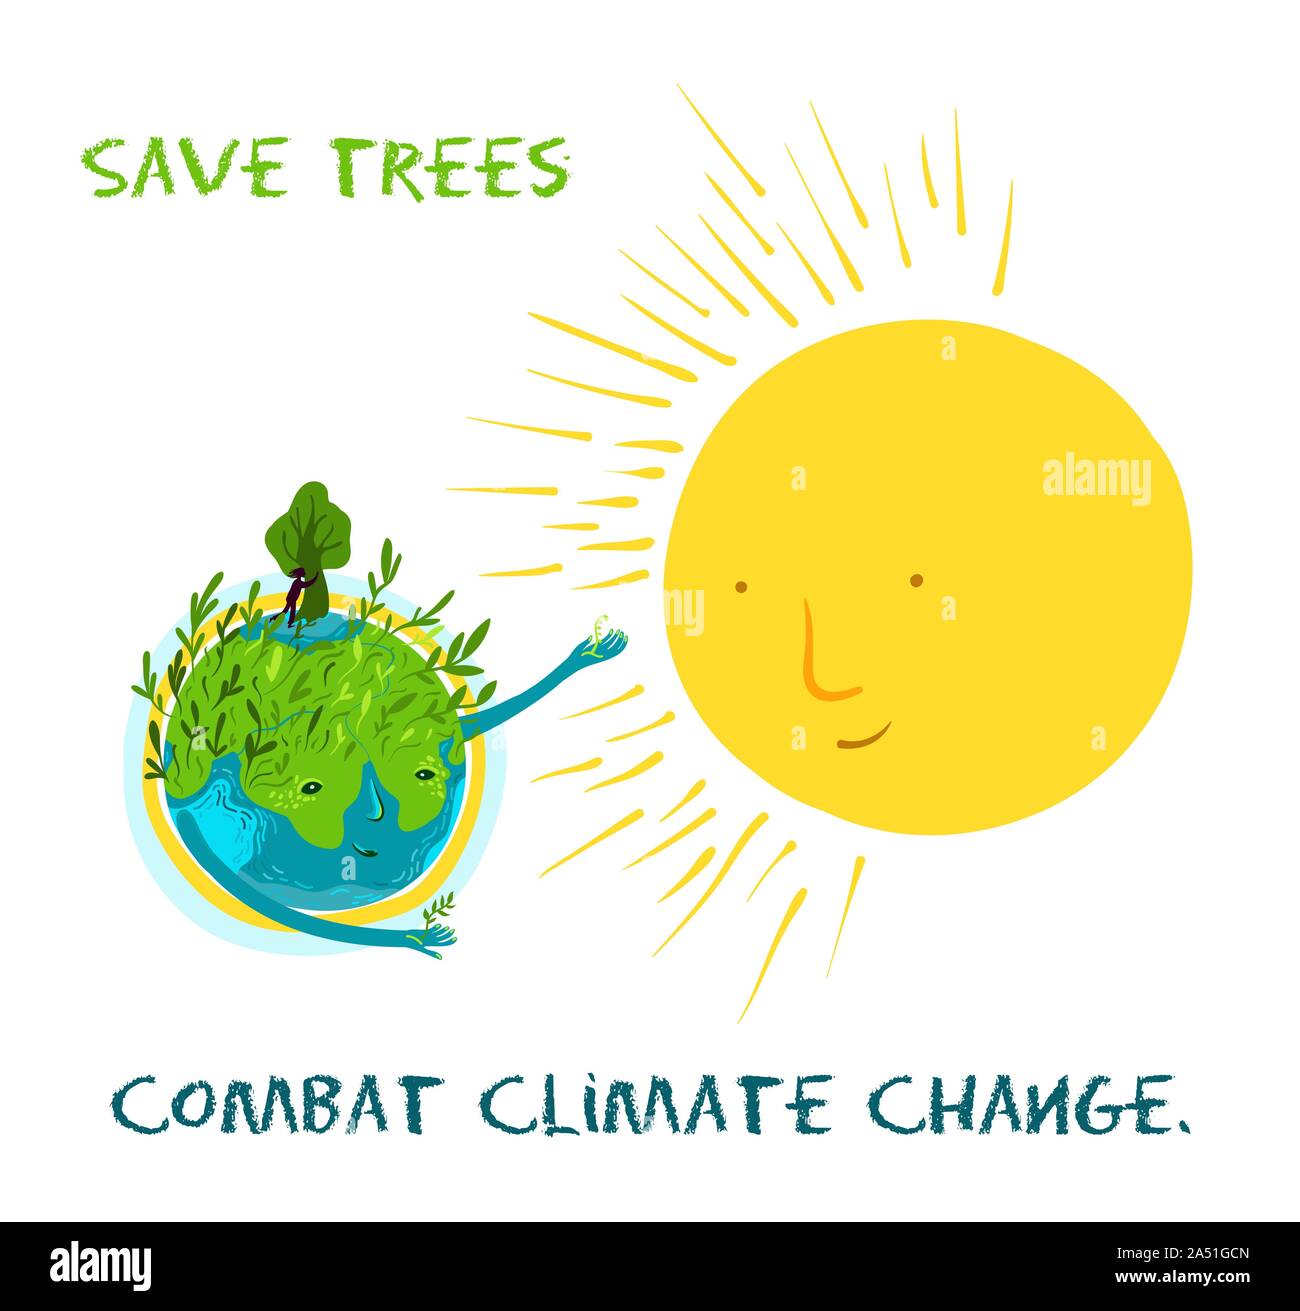 Speichern Bäume, Kampf gegen den Klimawandel. Vektor ökologische Abbildung über die Erhaltung der Bäume und Pflanzen auf der Erde. Cute Charakter, conceptu Stock Vektor